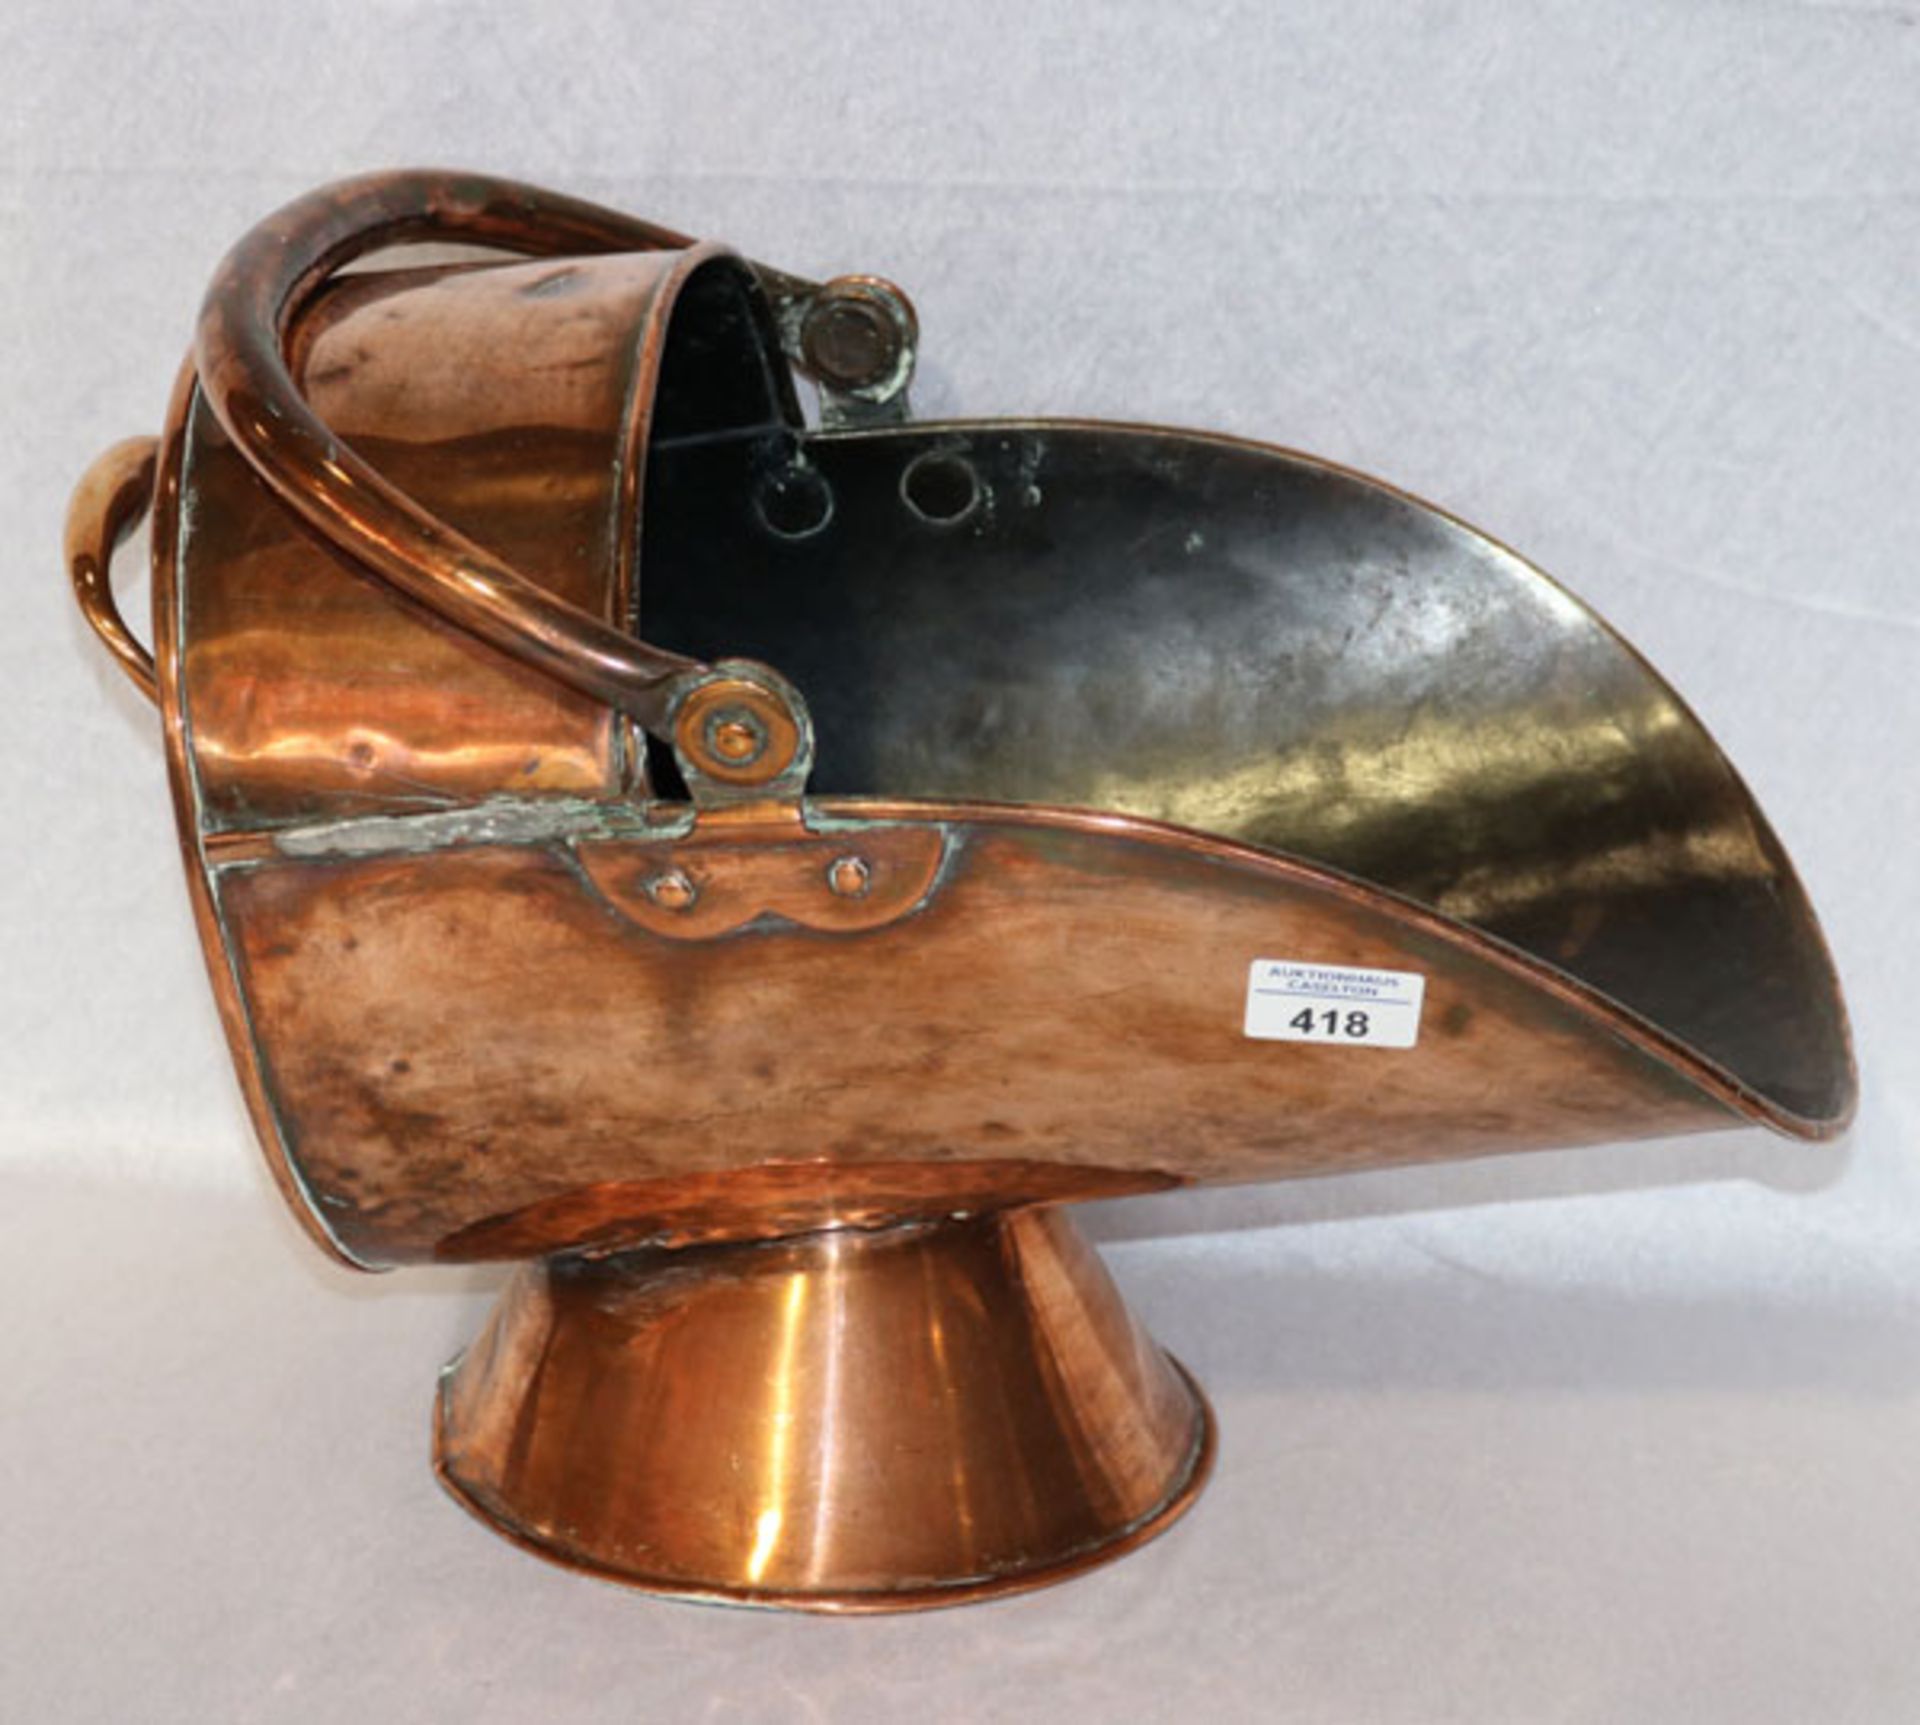 Kupfer Kohlenschippe, H 38 cm, B 26 cm, T 43 cm, Gebrauchsspuren